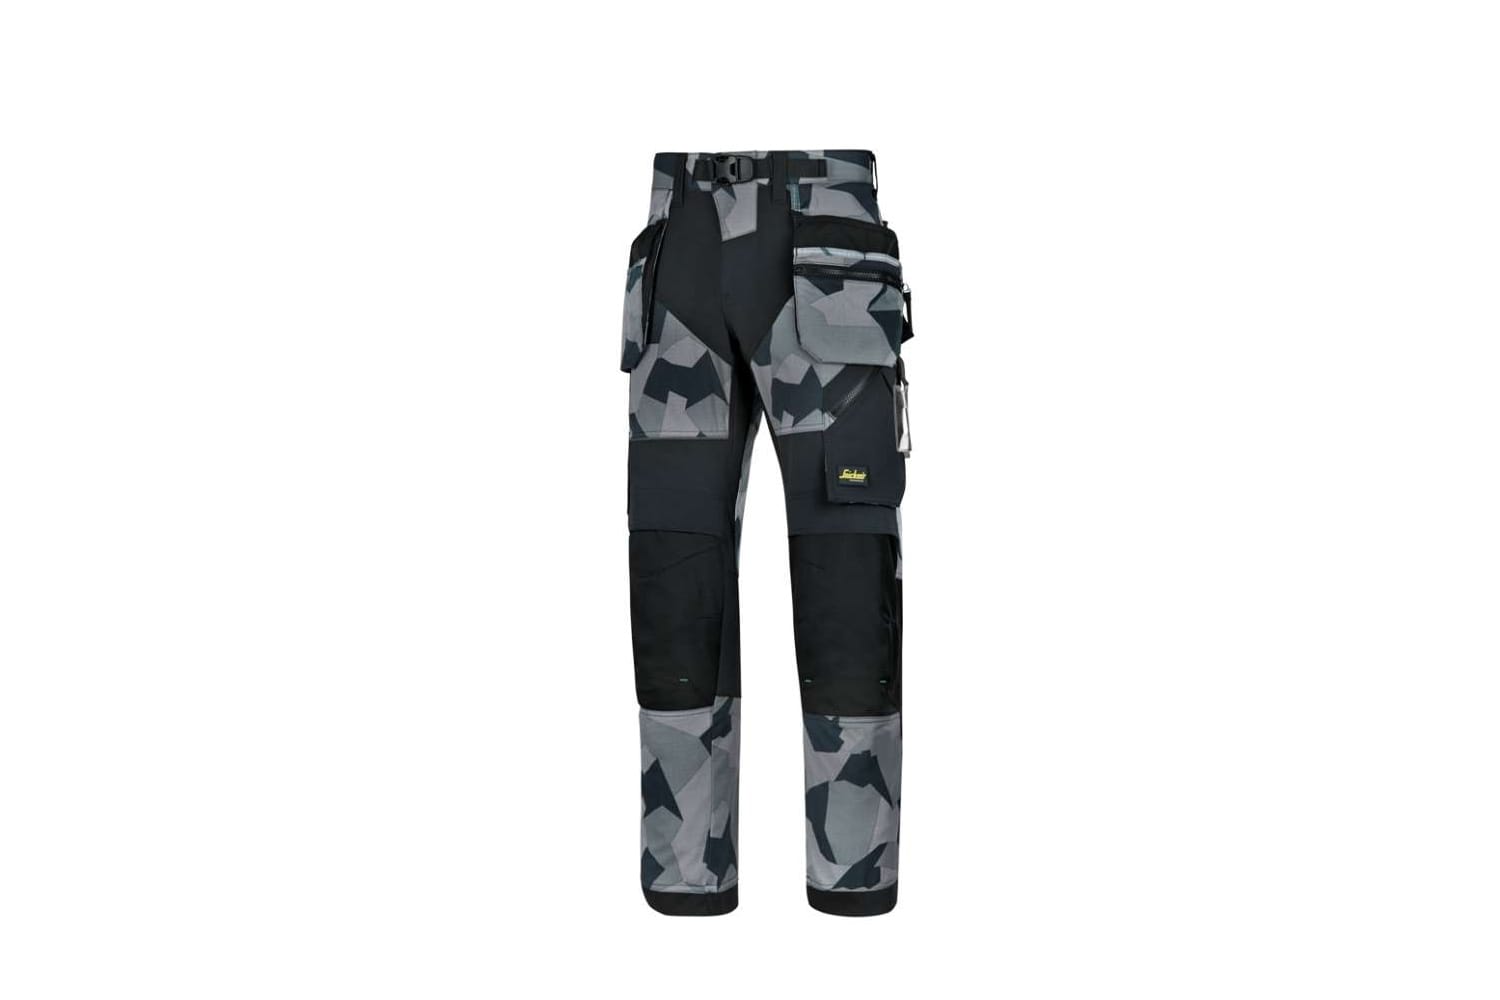 Geradezu modisch zeigt sich die superleichte Arbeitshose von Snickers Workwear (um132 Euro) mit ihrem grafischen Camouflage-Muster. Praktische Taschen und Verstärkungen sorgen für Komfort.